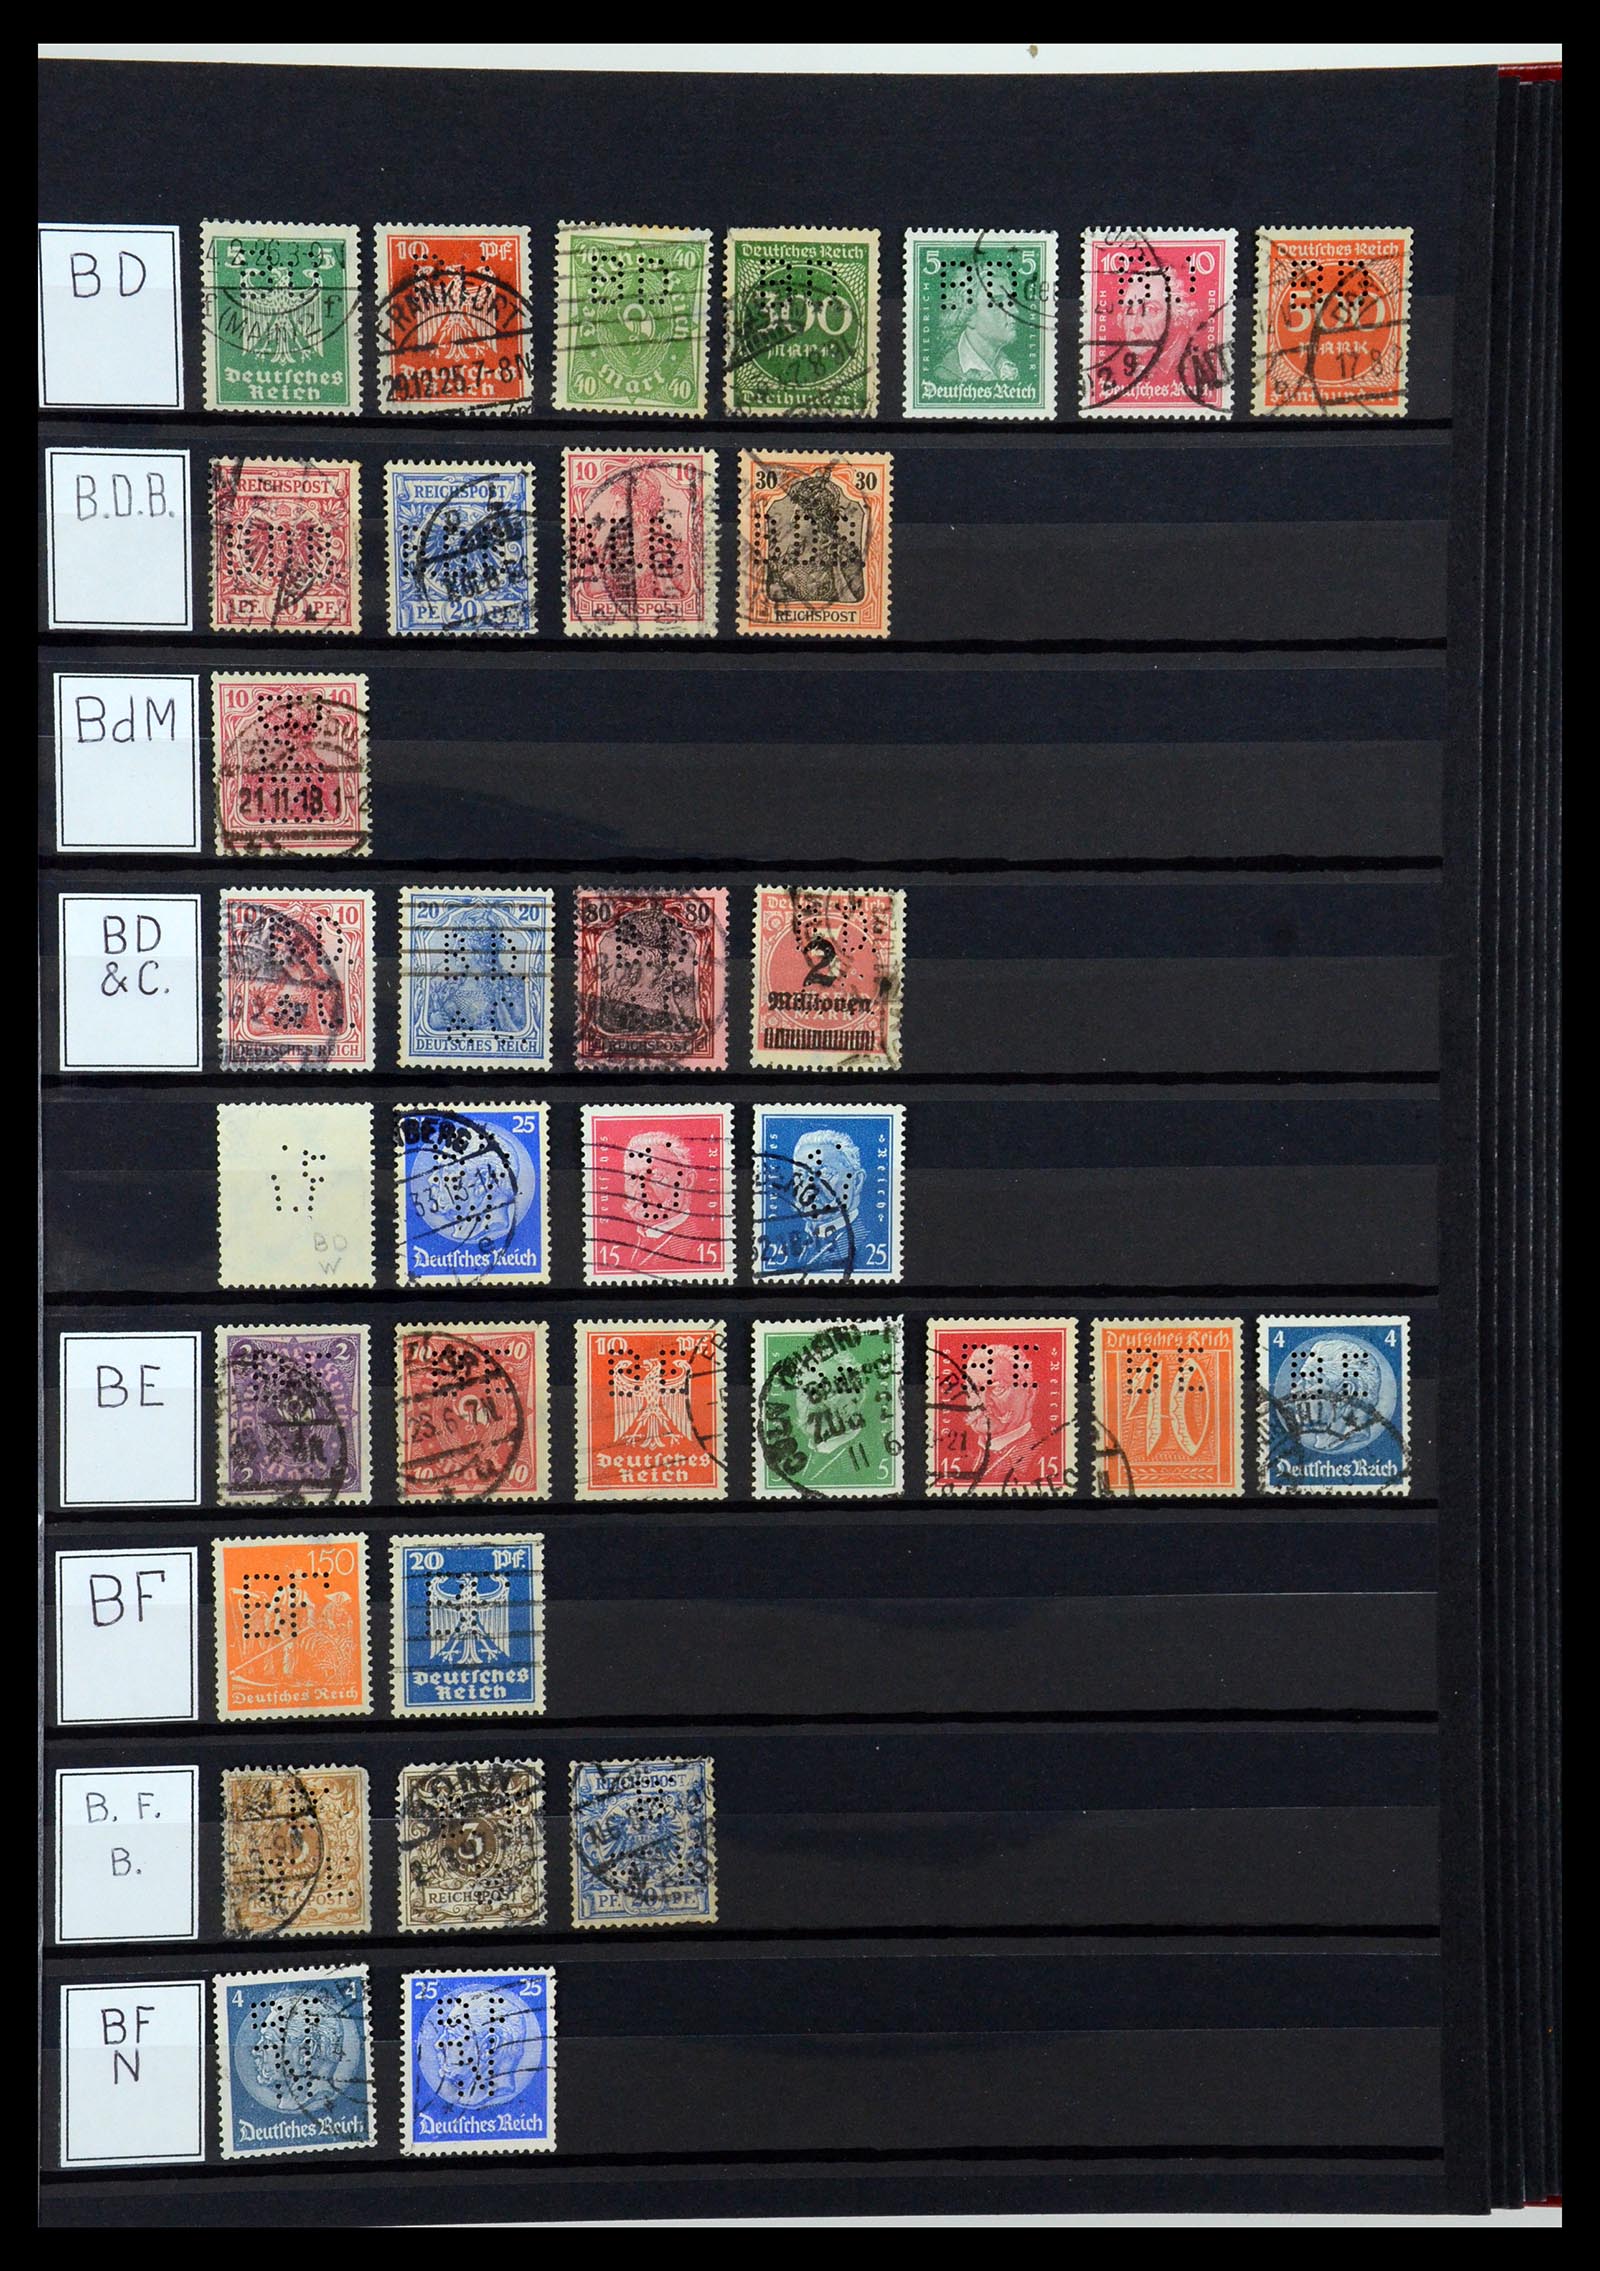 36405 037 - Stamp collection 36405 German Reich perfins 1880-1945.